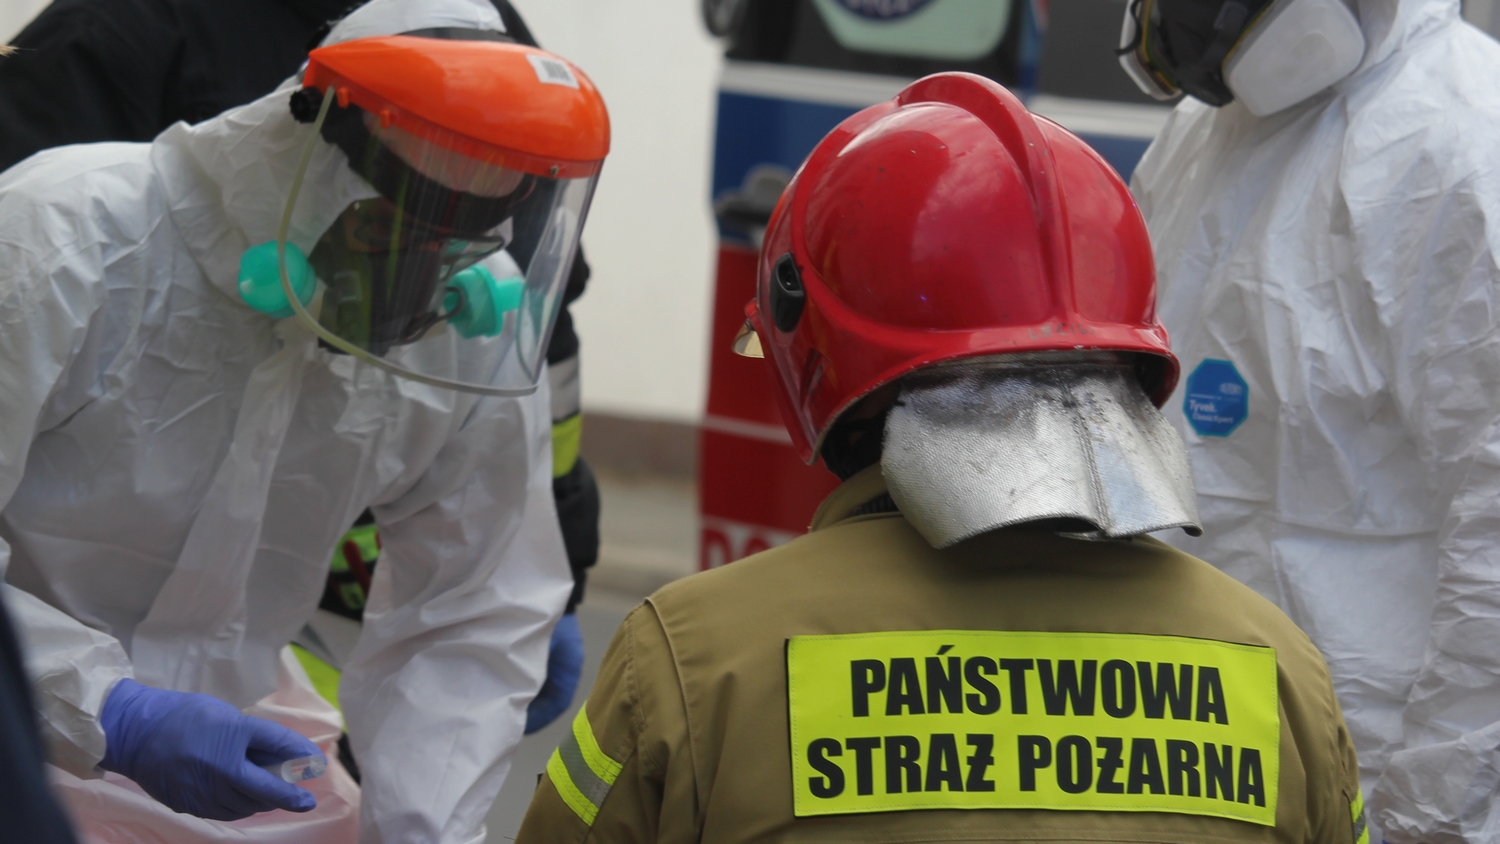 Strażak z Rawicza oddelegowany do pracy w leszczyńskim szpitalu - Zdjęcie główne